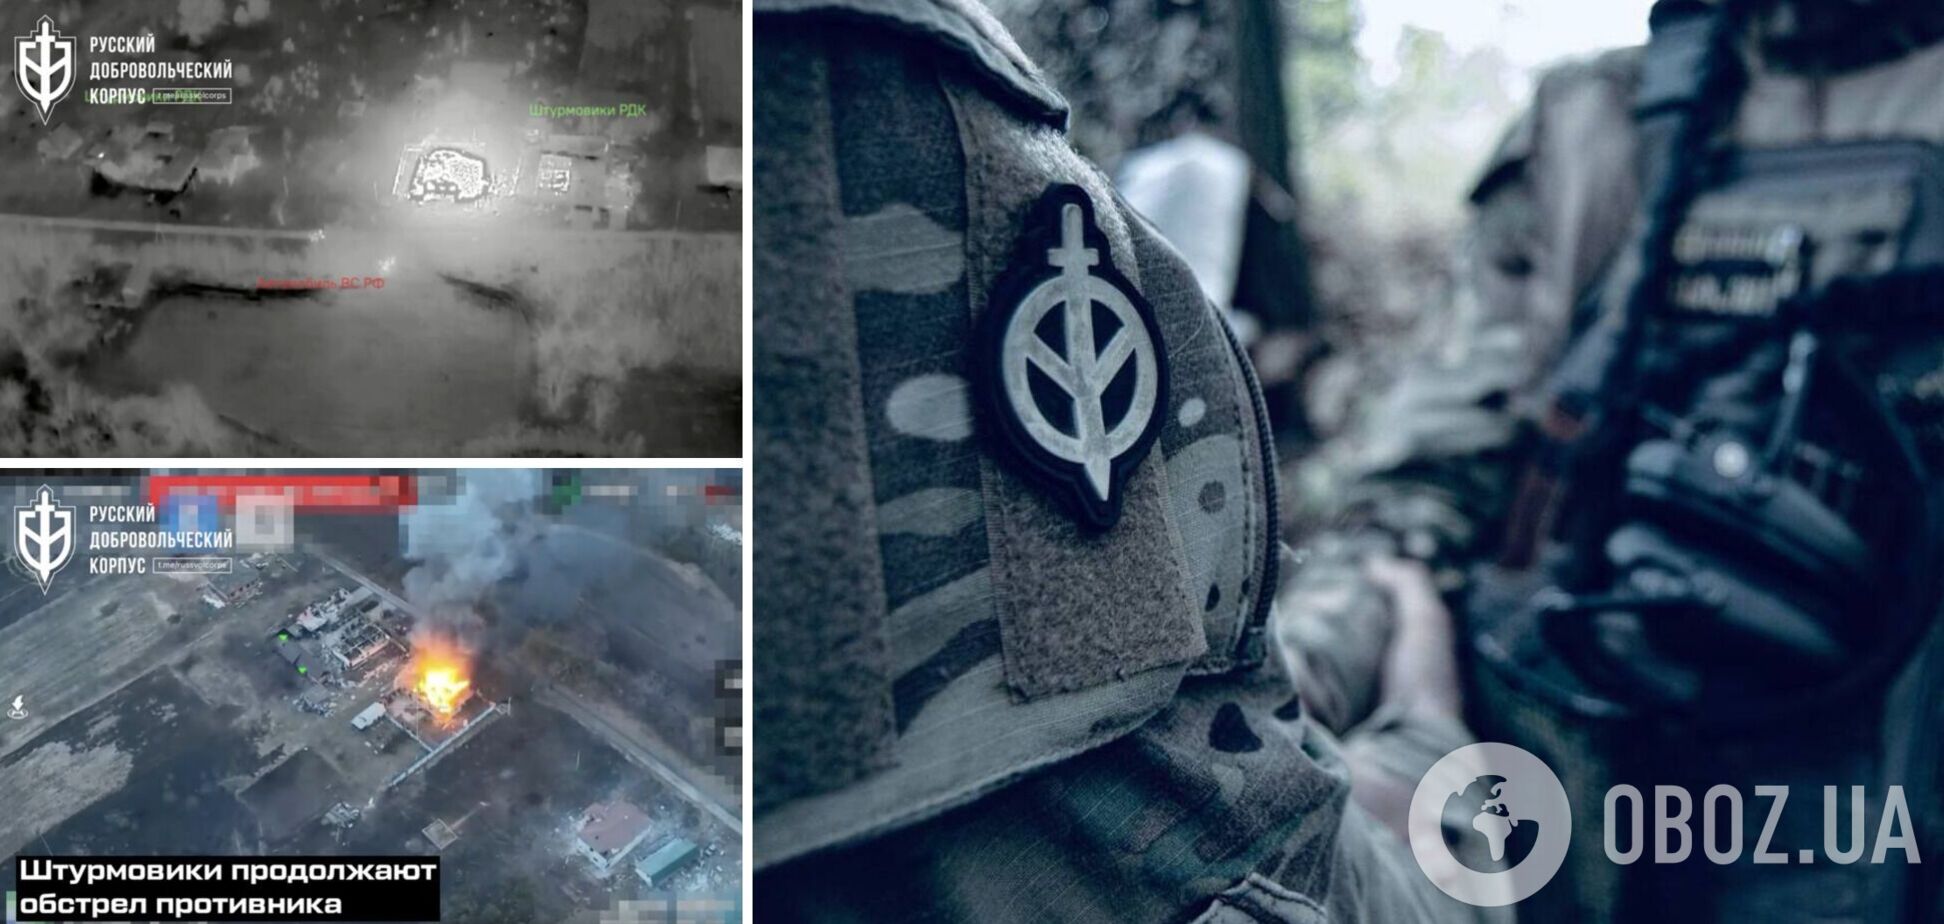 Бойцы РДК устроили засаду на спецназ ГРУ в Белгородской области. Видео боя